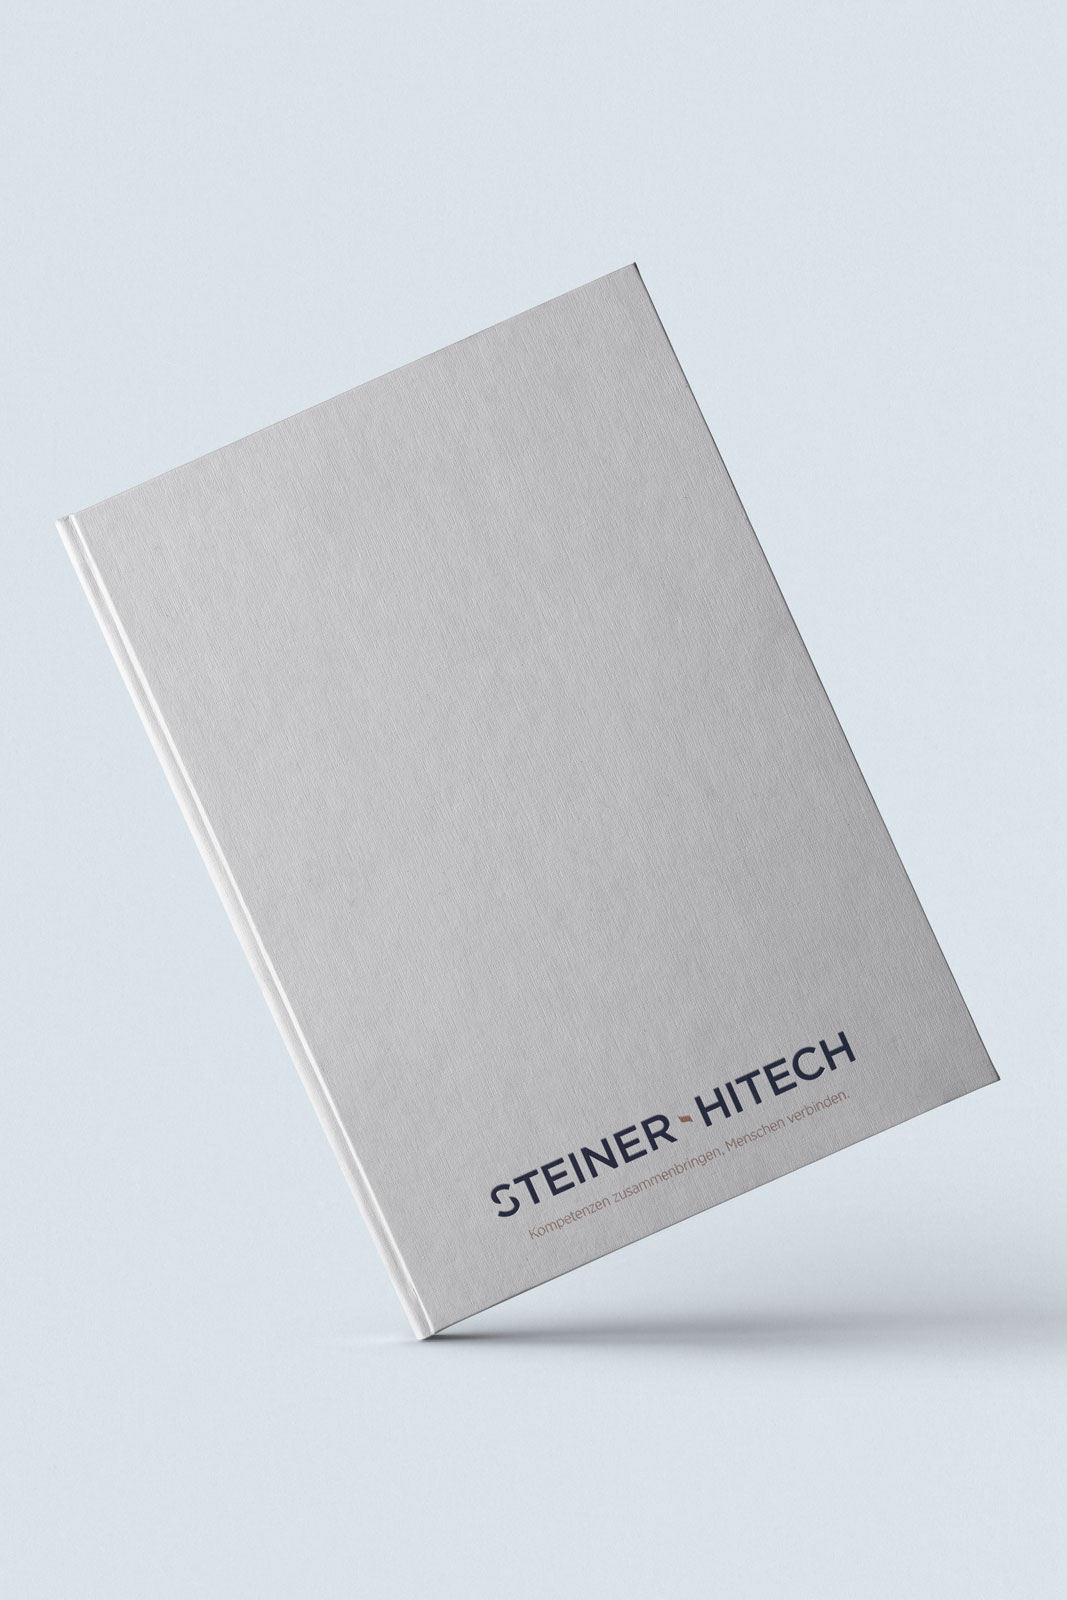 Steiner Hitech Book